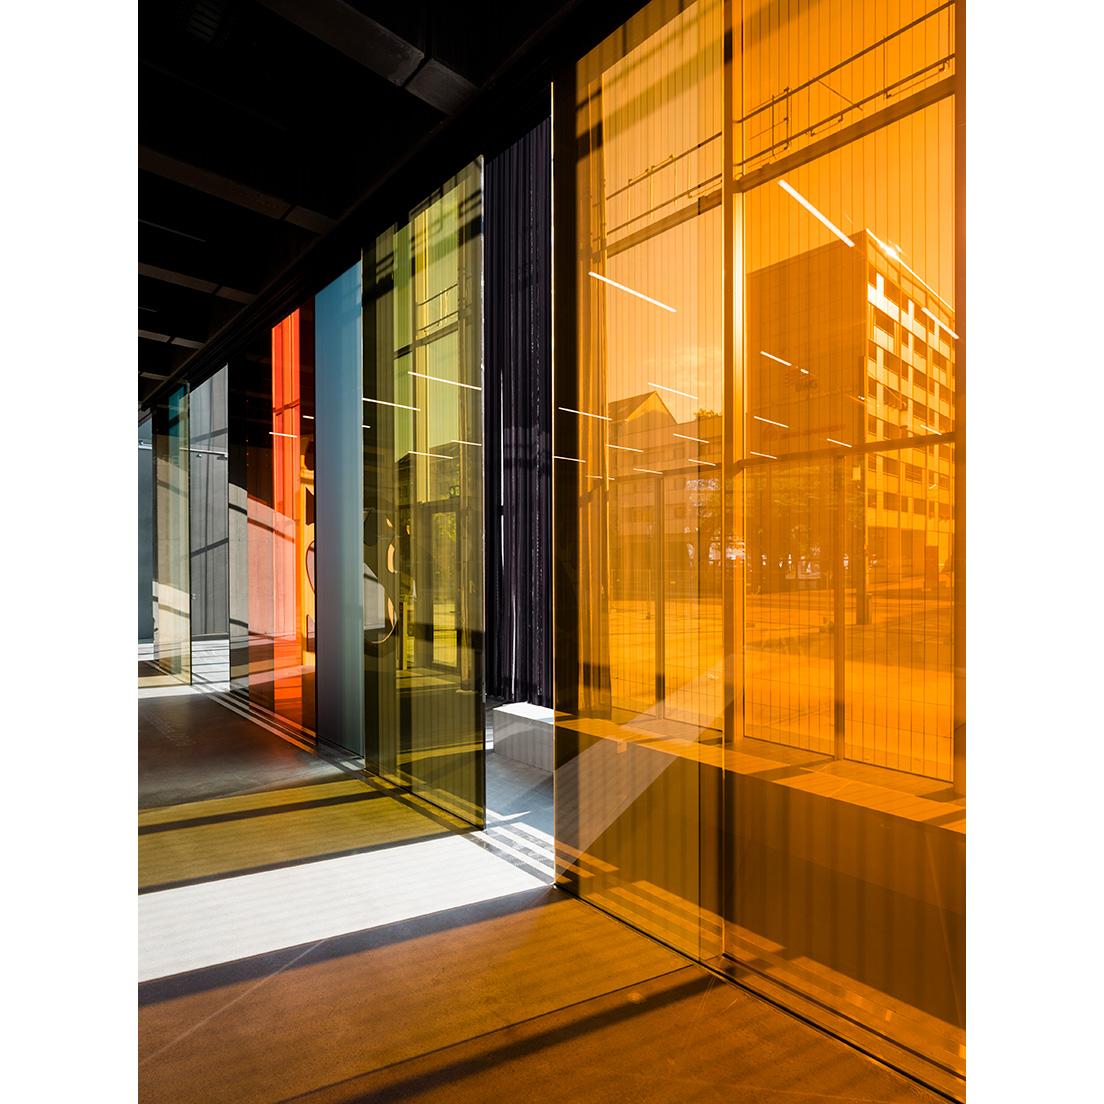 この建物のために制作されたルーシー・ラーヴェンによるアートワーク《Lichtspielhaus》（2019年）が、ガラスを通して差し込む外光に映える。　copyright_Foundation Bauhaus Dessau , photo_Thomas Meyer / OSTKREUZ